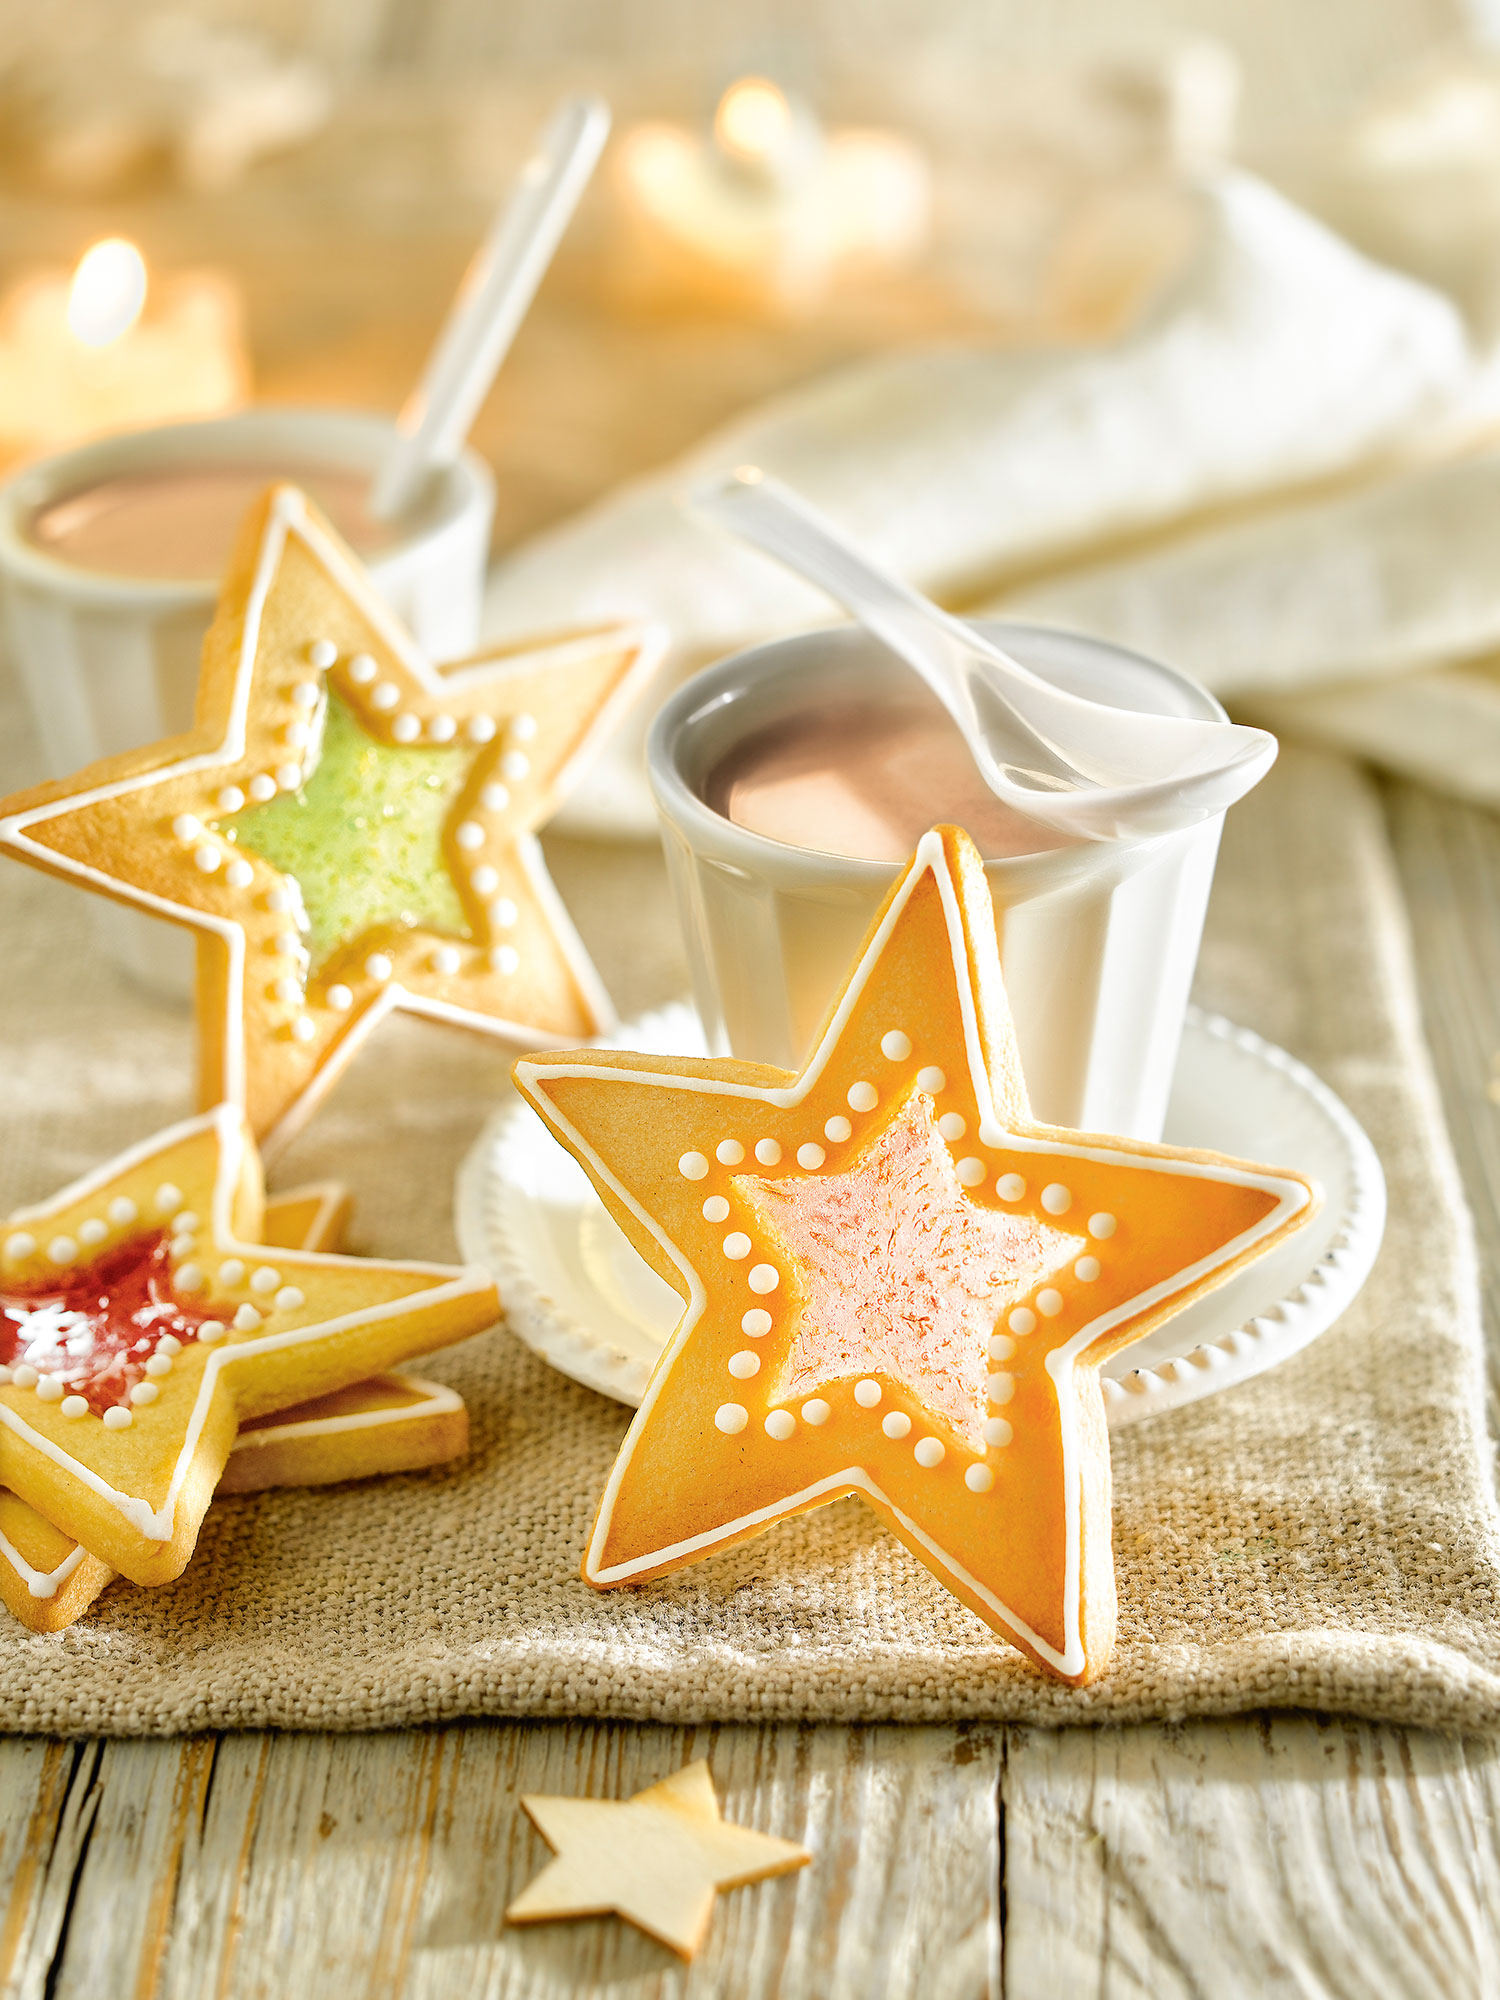 Detalle de galletas eb forma de estrella con el centro de caramelo. Detalle de galletas en forma de estrella con el centro de caramelo